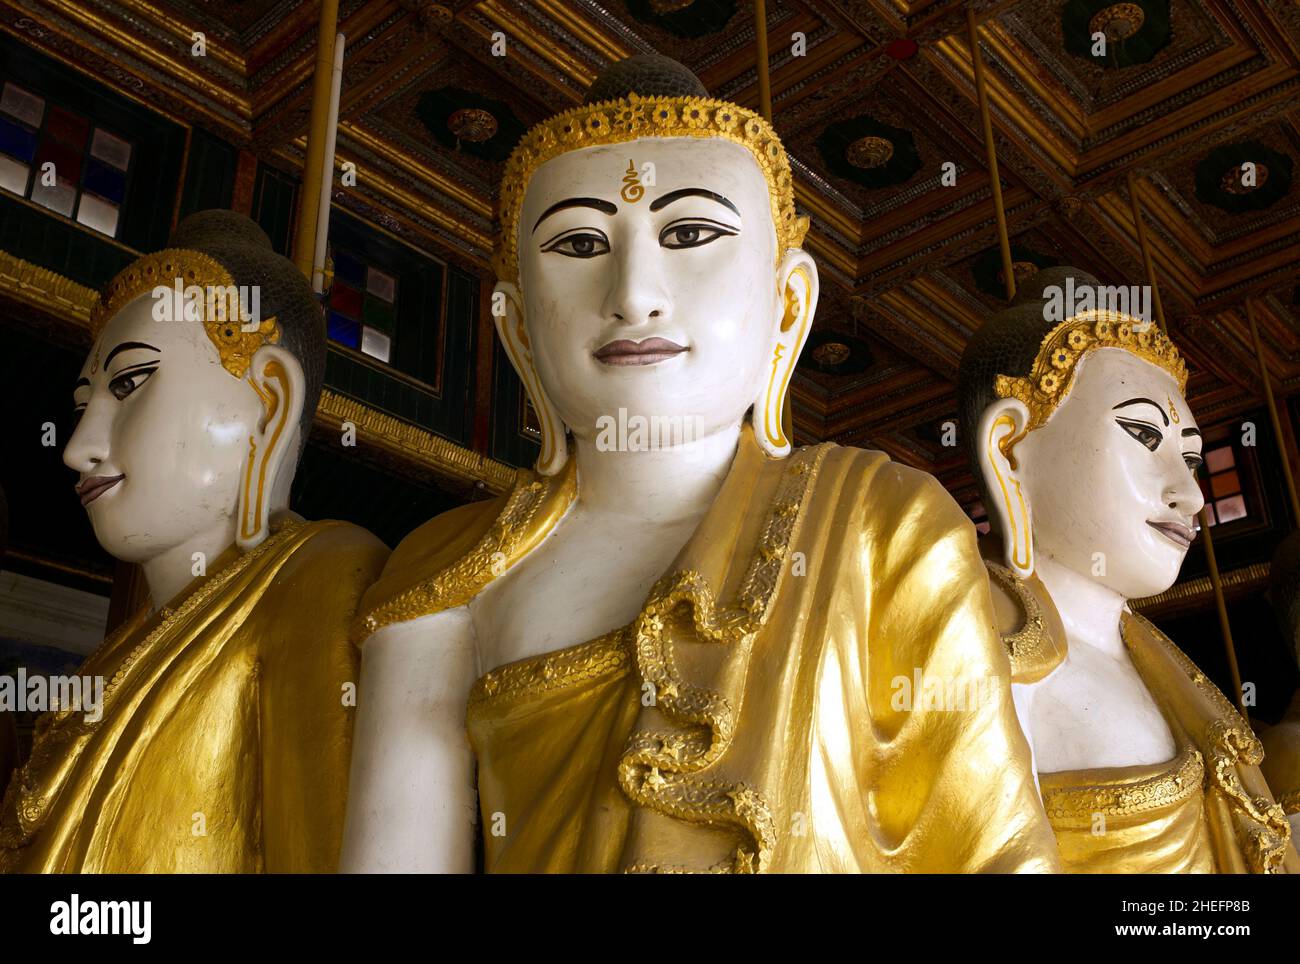 Photographie couleur de trois statues de Bouddha à l'intérieur de Kyaikthanian Paya, Mawlamyine, Myanmar, Asie, 2015. Banque D'Images